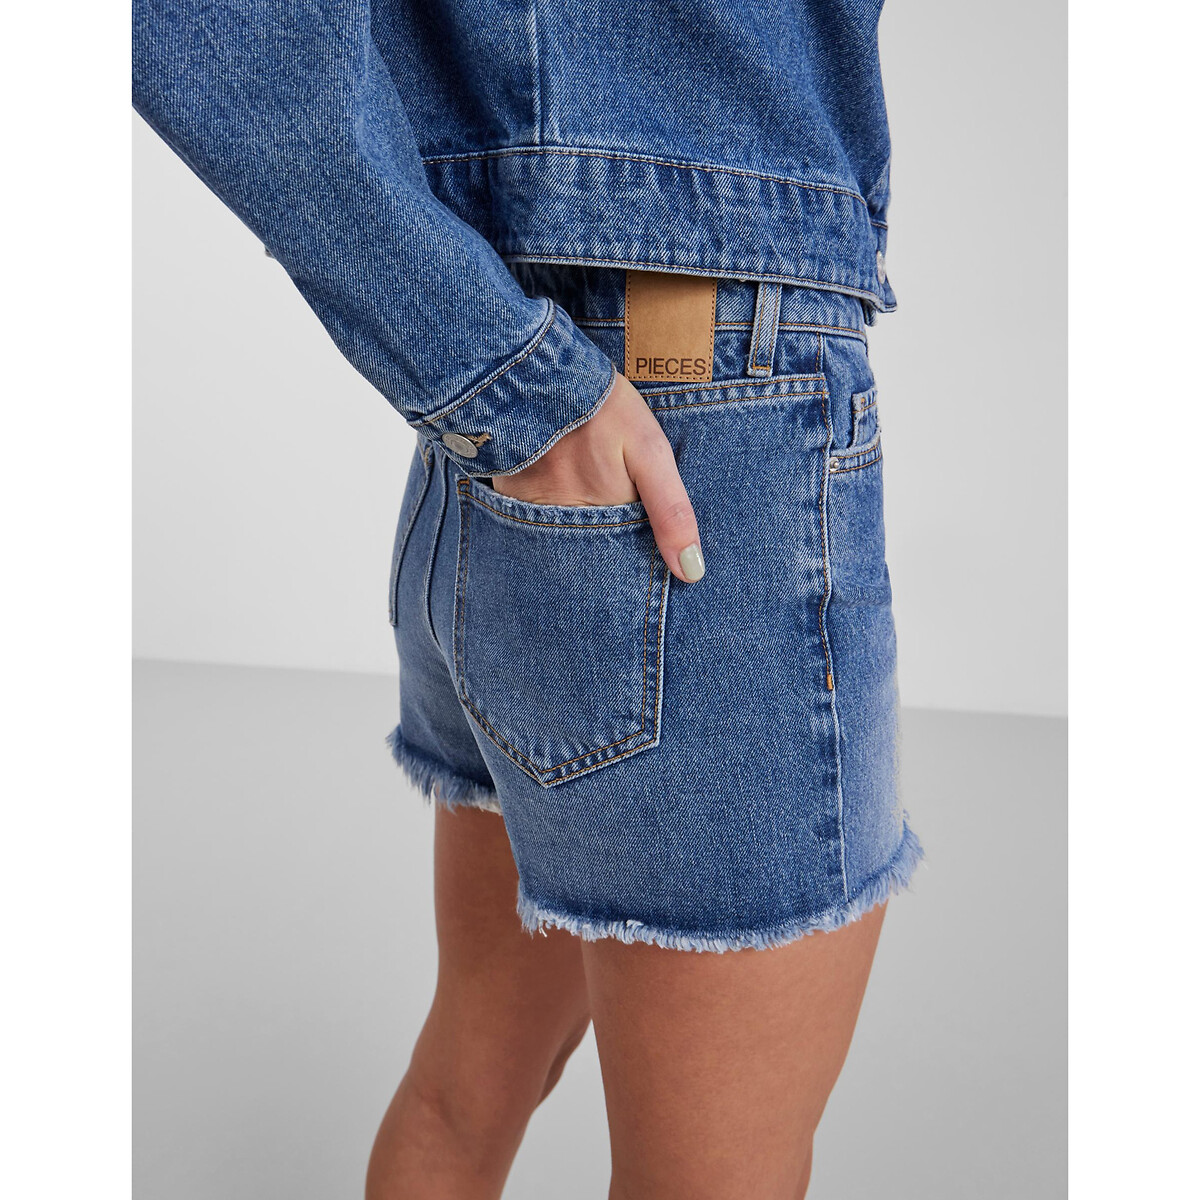 Шорты Из джинсовой ткани S синий LaRedoute, размер S - фото 2